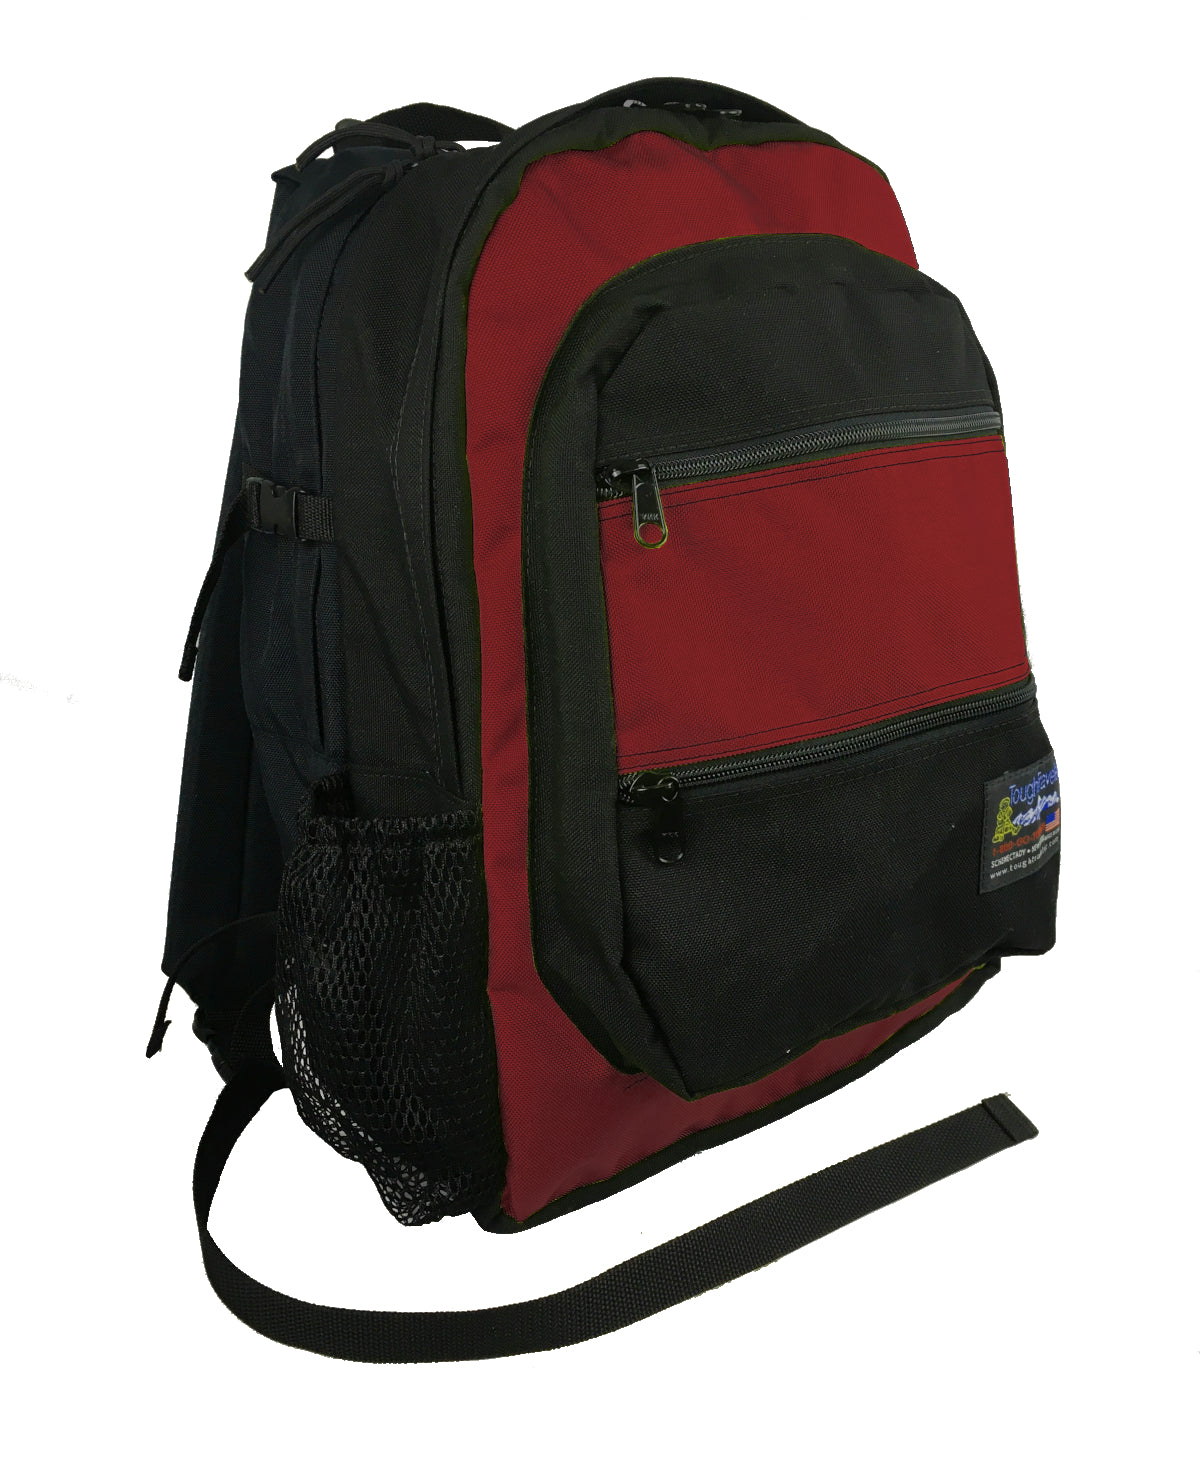 Backpacks Lifetime Warranty | Anti Theft Backpack Laptop - Waterproof  15.6inch Laptop - Aliexpress